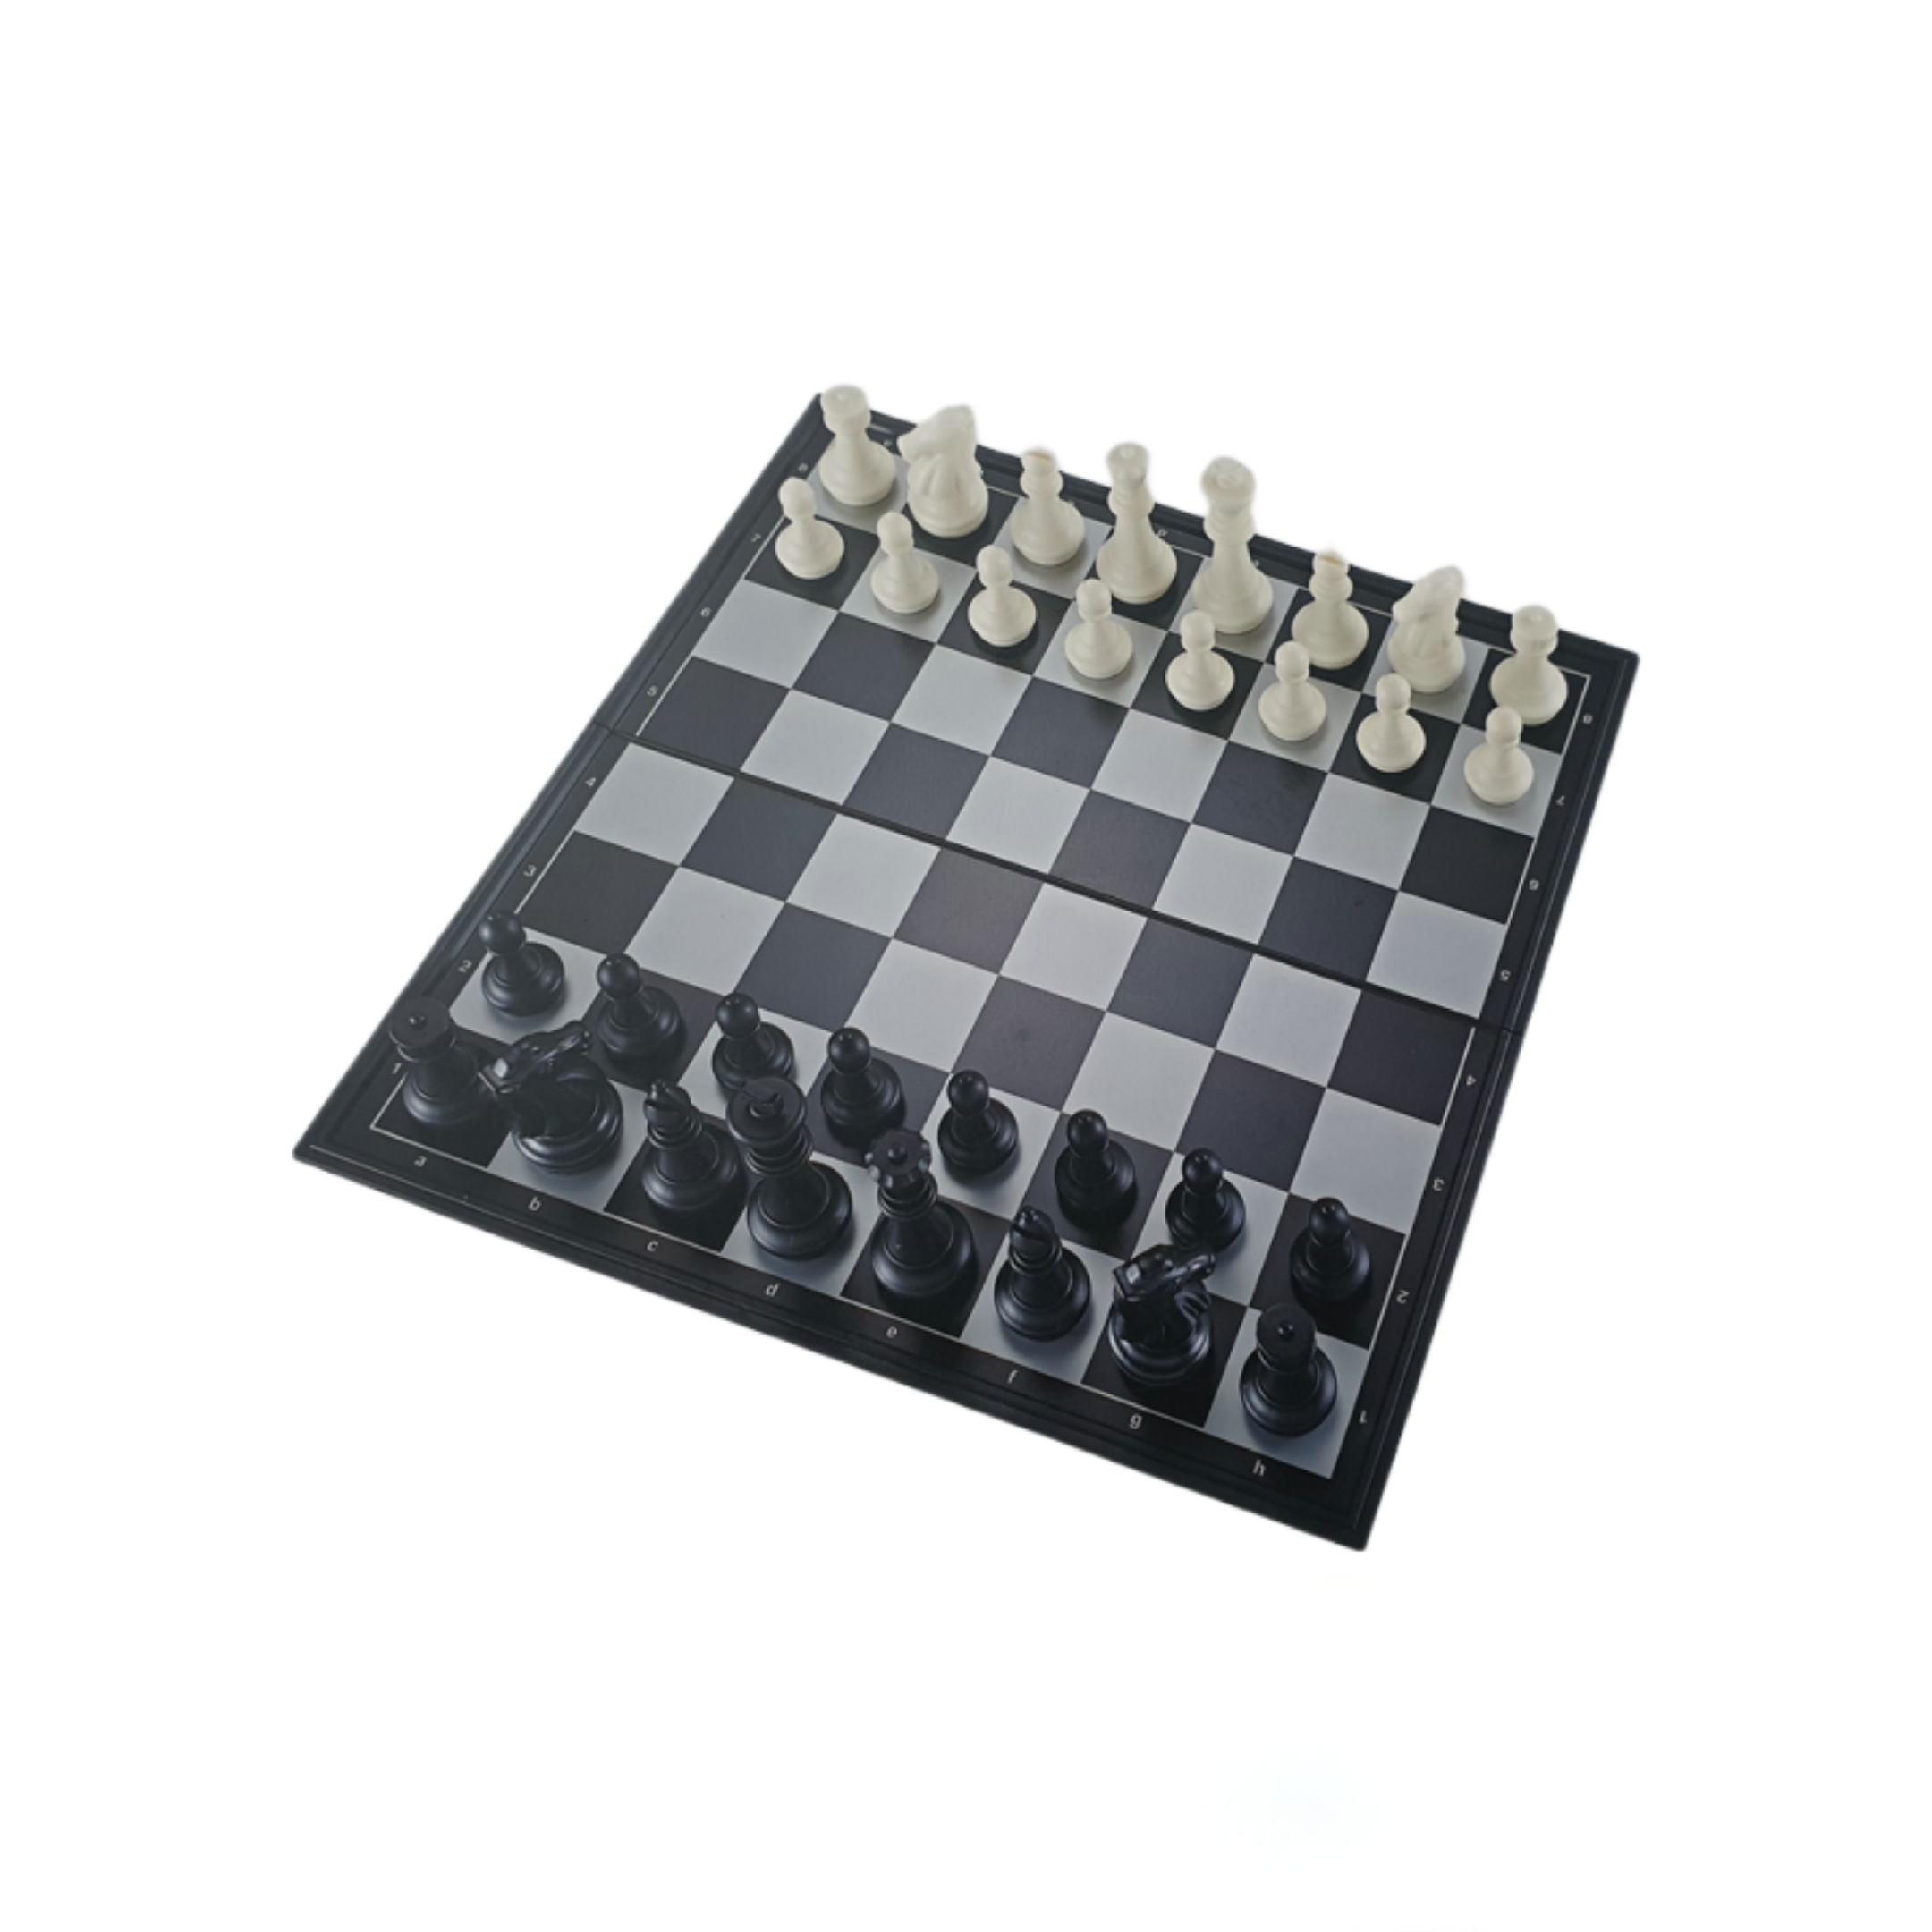 Tablero de Ajedrez Plástico Magnético con Piezas Blancas y Negras 30x30 cm. Nro. 2 - 3201